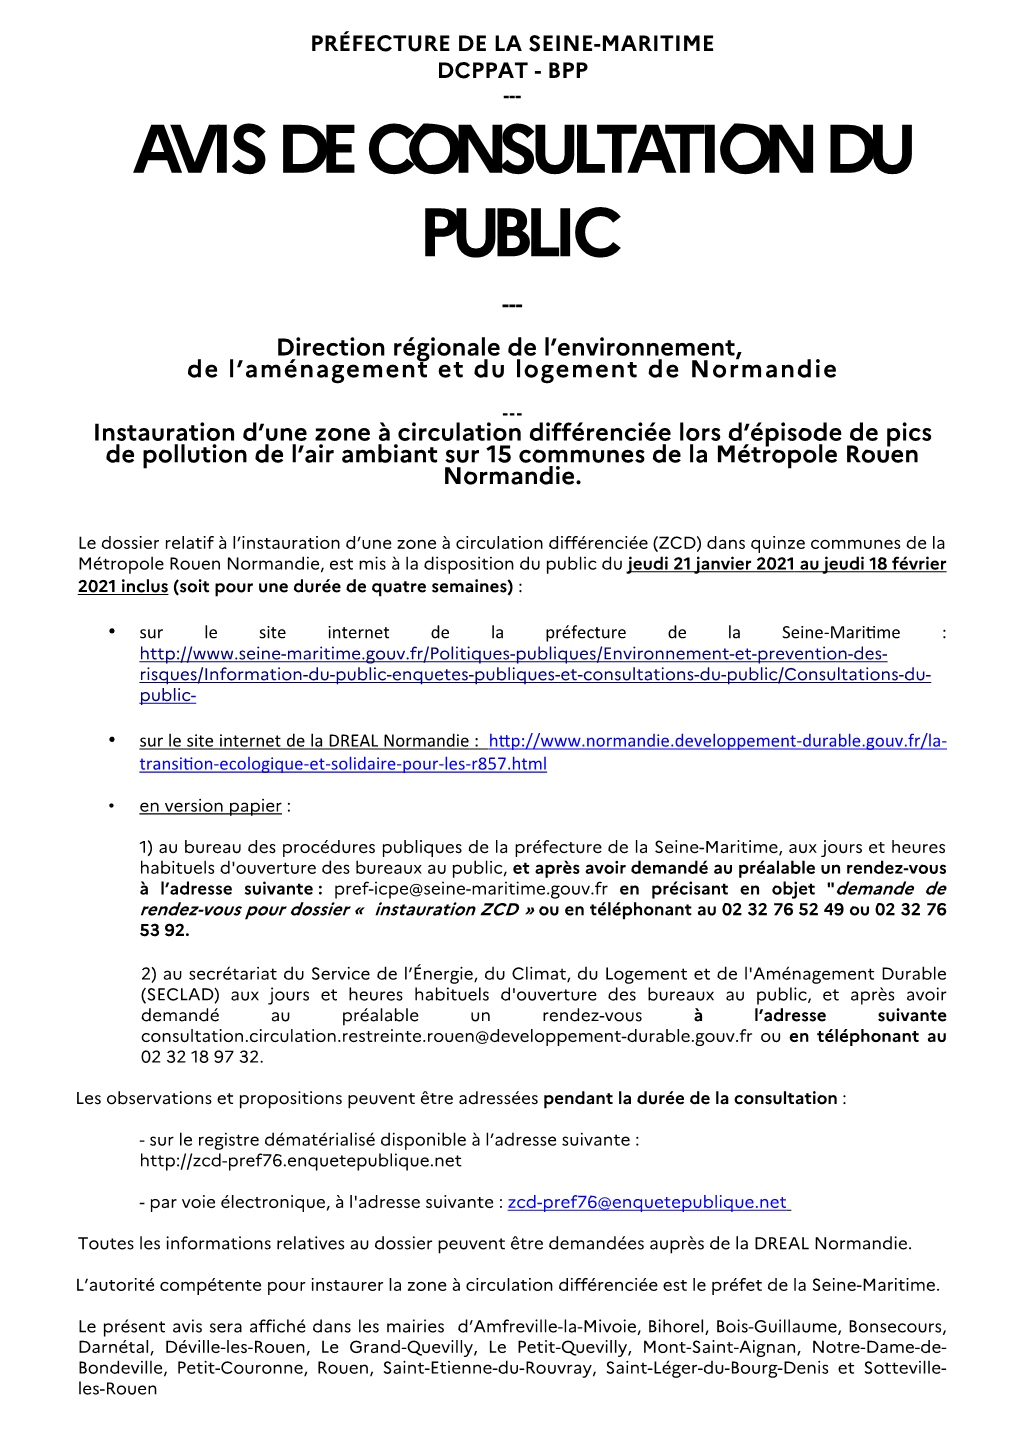 AVIS DE CONSULTATION DU PUBLIC --- Direction Régionale De L’Environnement, De L’Aménagement Et Du Logement De Normandie